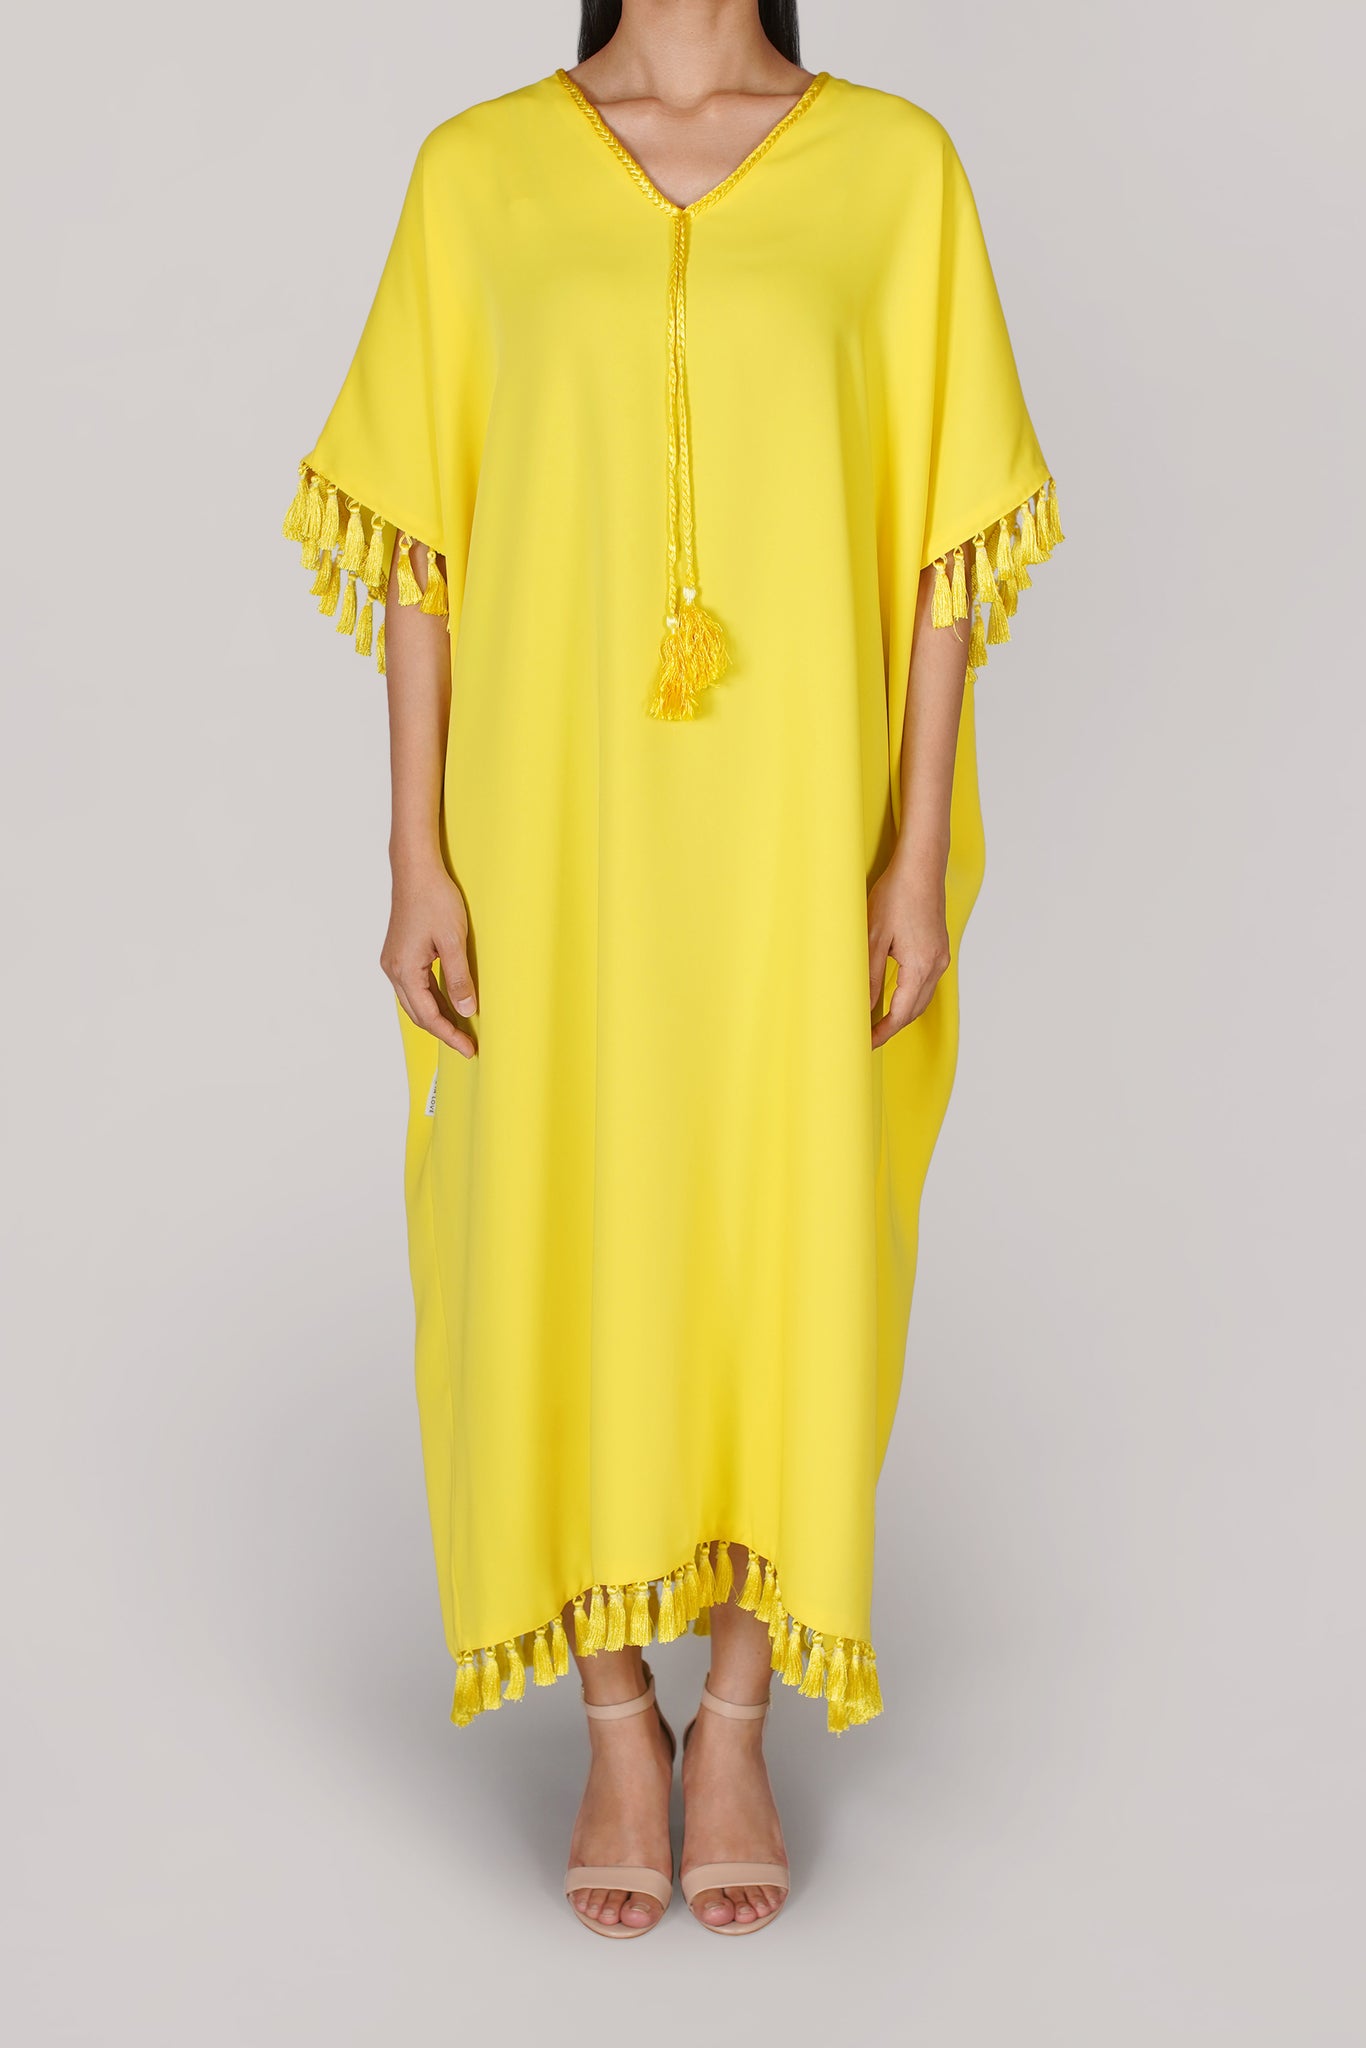 Bright Yellow Tassel Dress (041)